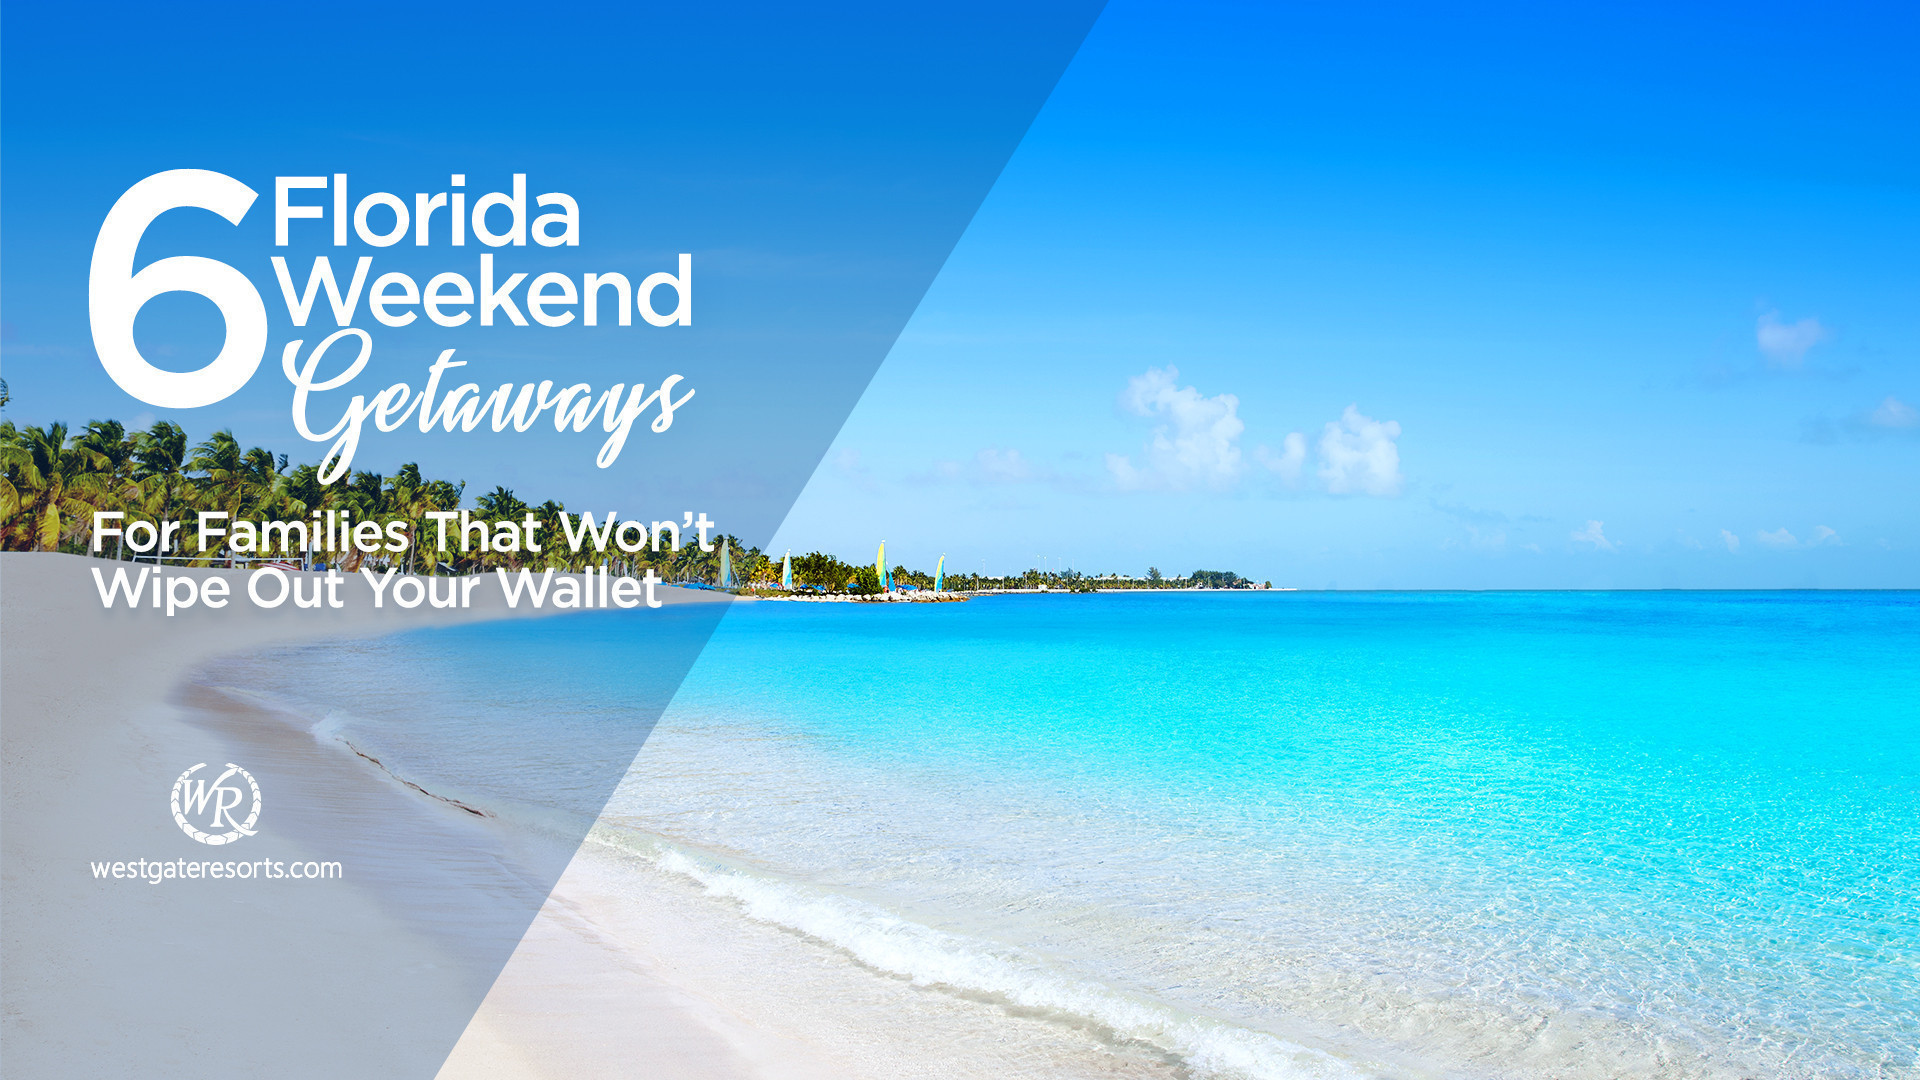 Florida Weekend Getaways for Families | Weekend Getaways in Florida | Westgate Resorts